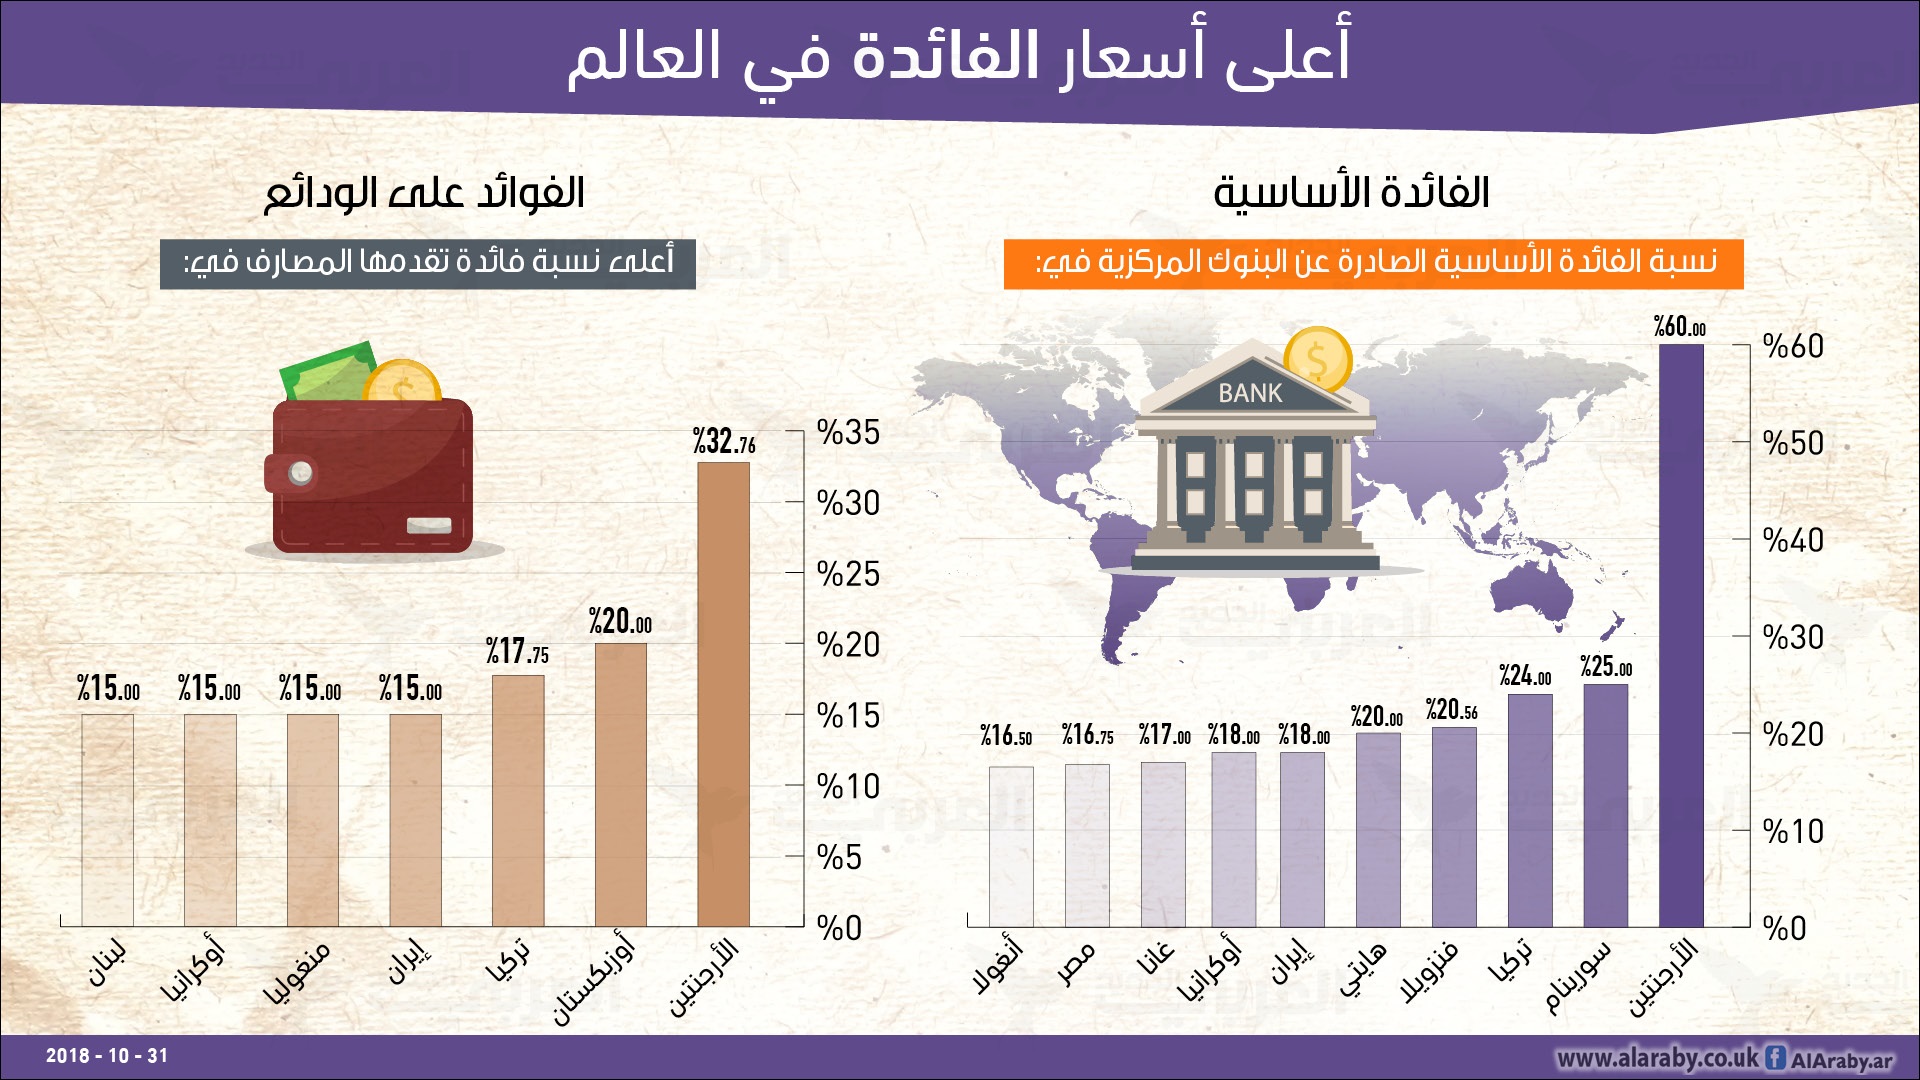 الفائدة السعودية البنوك نسبة 2021 في افضل بنك